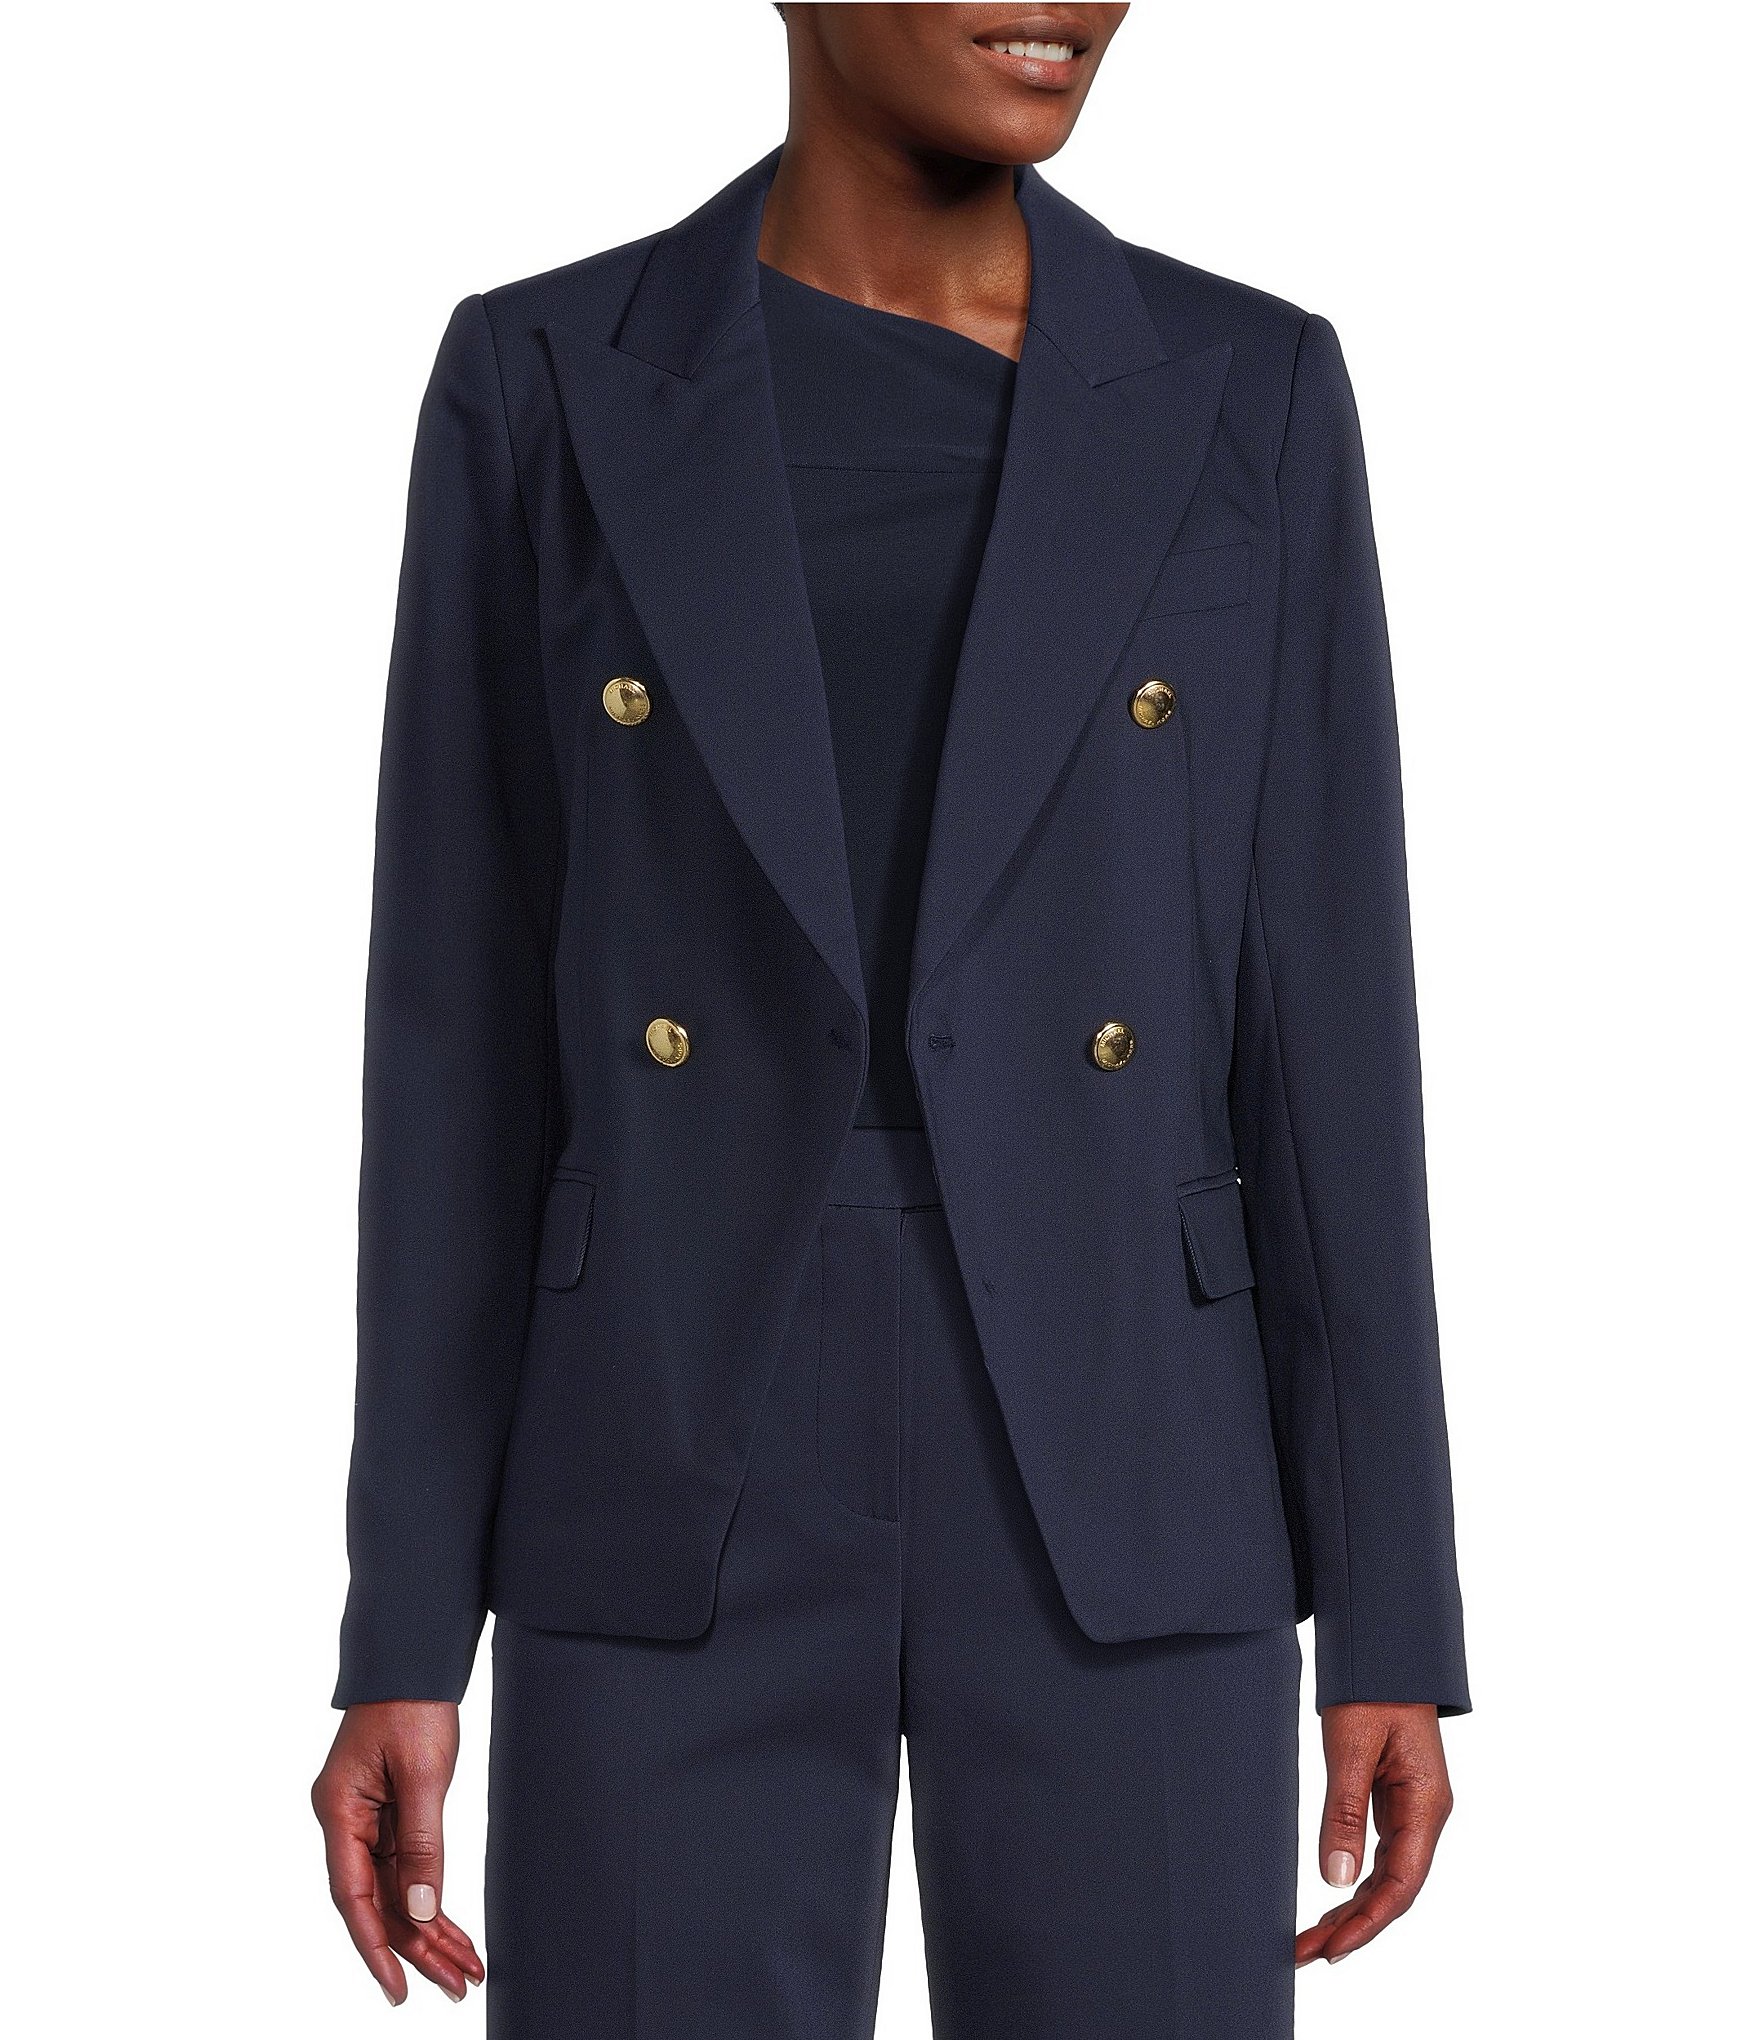 Sale & Clearance Women's Work Jackets Blazers & Vests | Dillard's